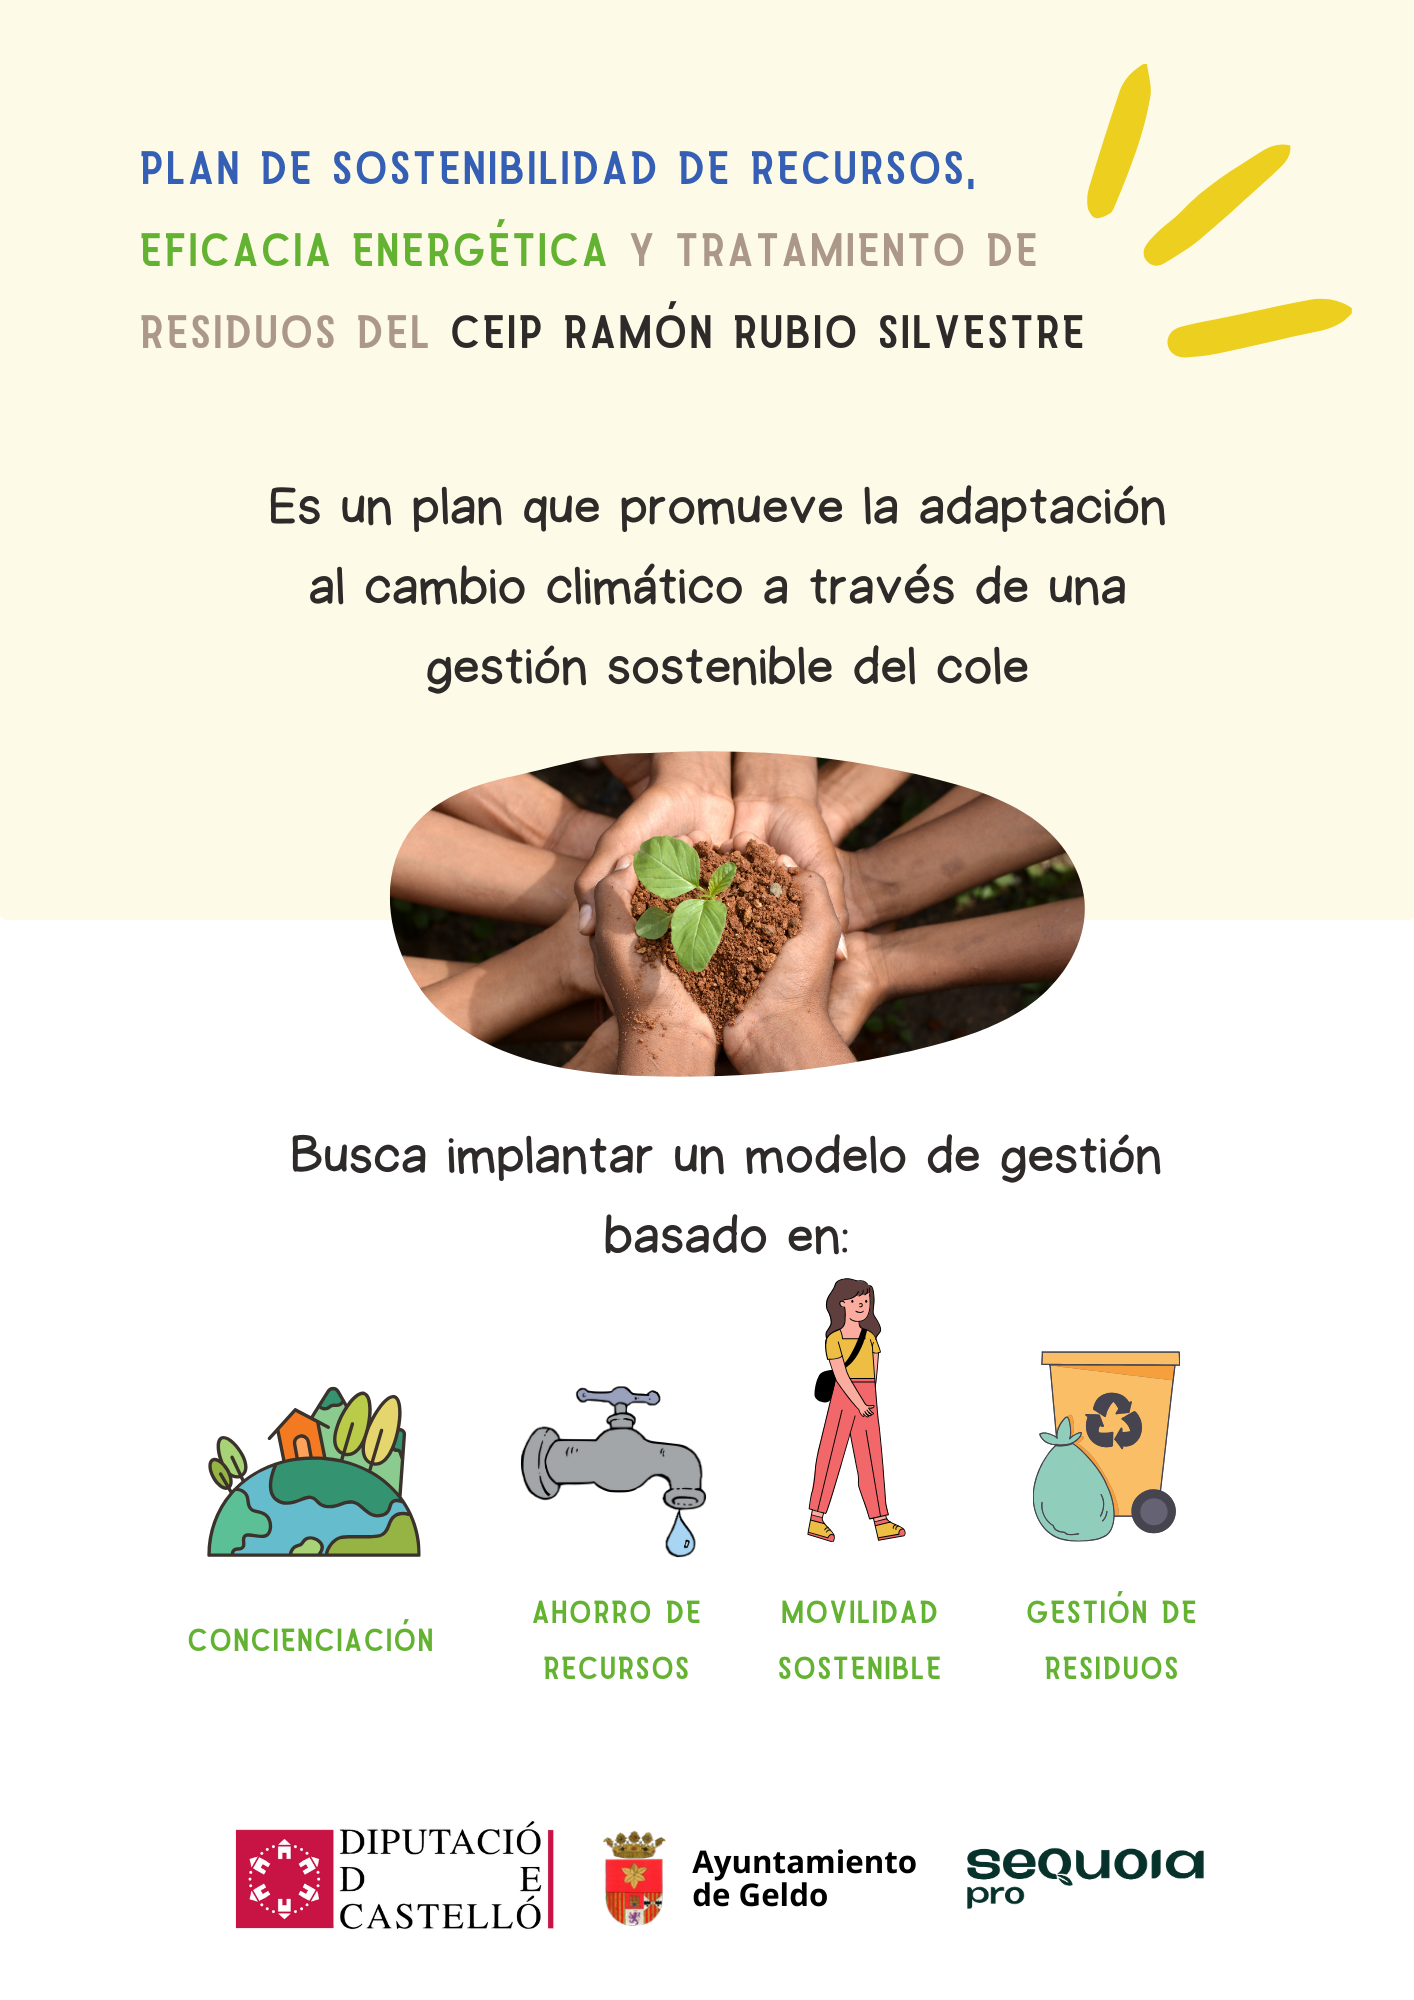 Plan de sostenibilidad de recursos, eficacia energética y tratamiento de residuos del CEIP Ramón Rubio Silvestre